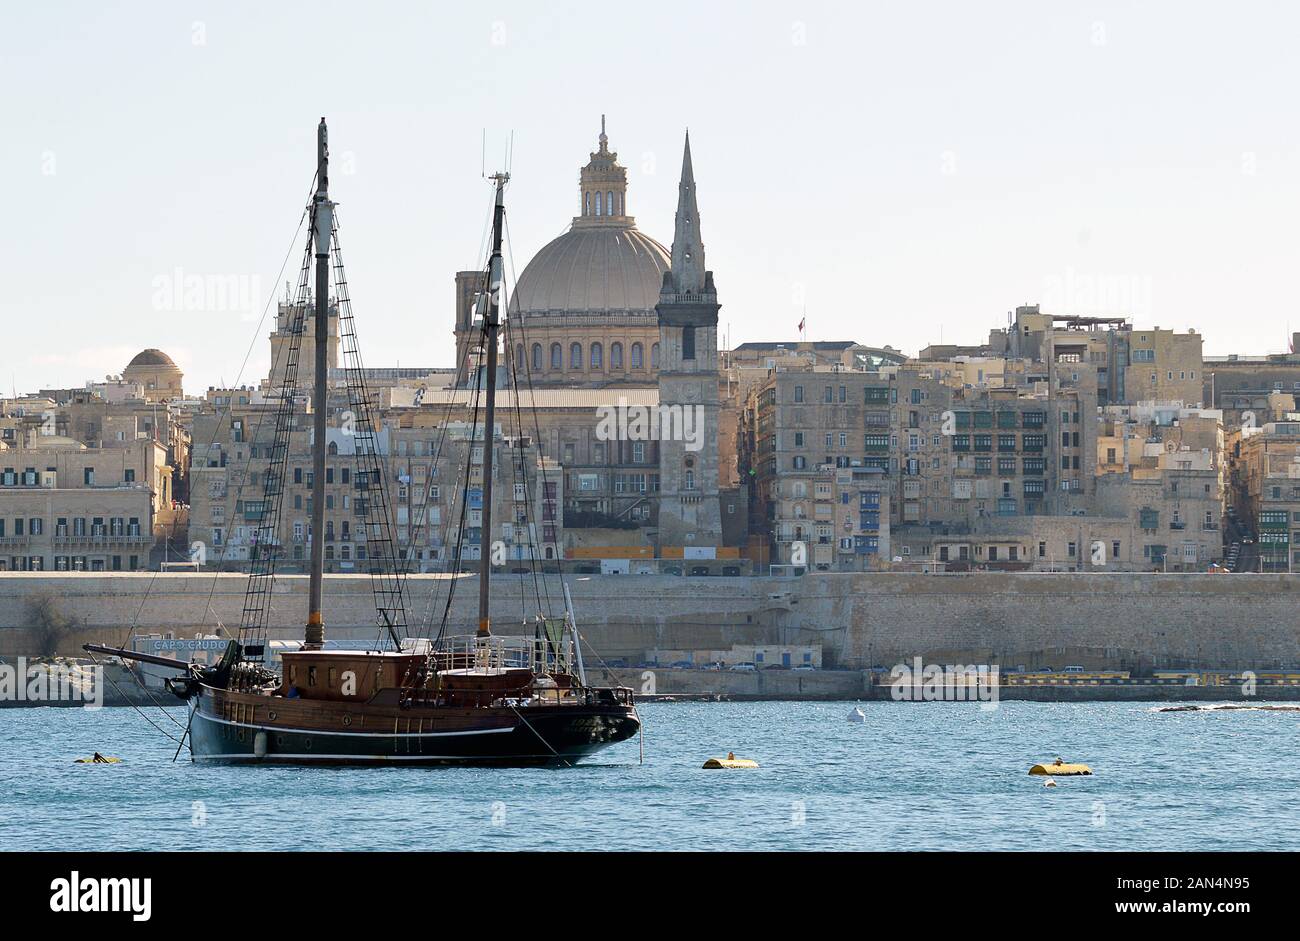 Valletta, MALTA - 10. JANUAR 2020: Ein Schoner, der im Hafen von Marsamxetto zwischen Sliema und Valletta mit dem Turm der anglikanischen Kathedrale von St Paul gegraben wurde Stockfoto